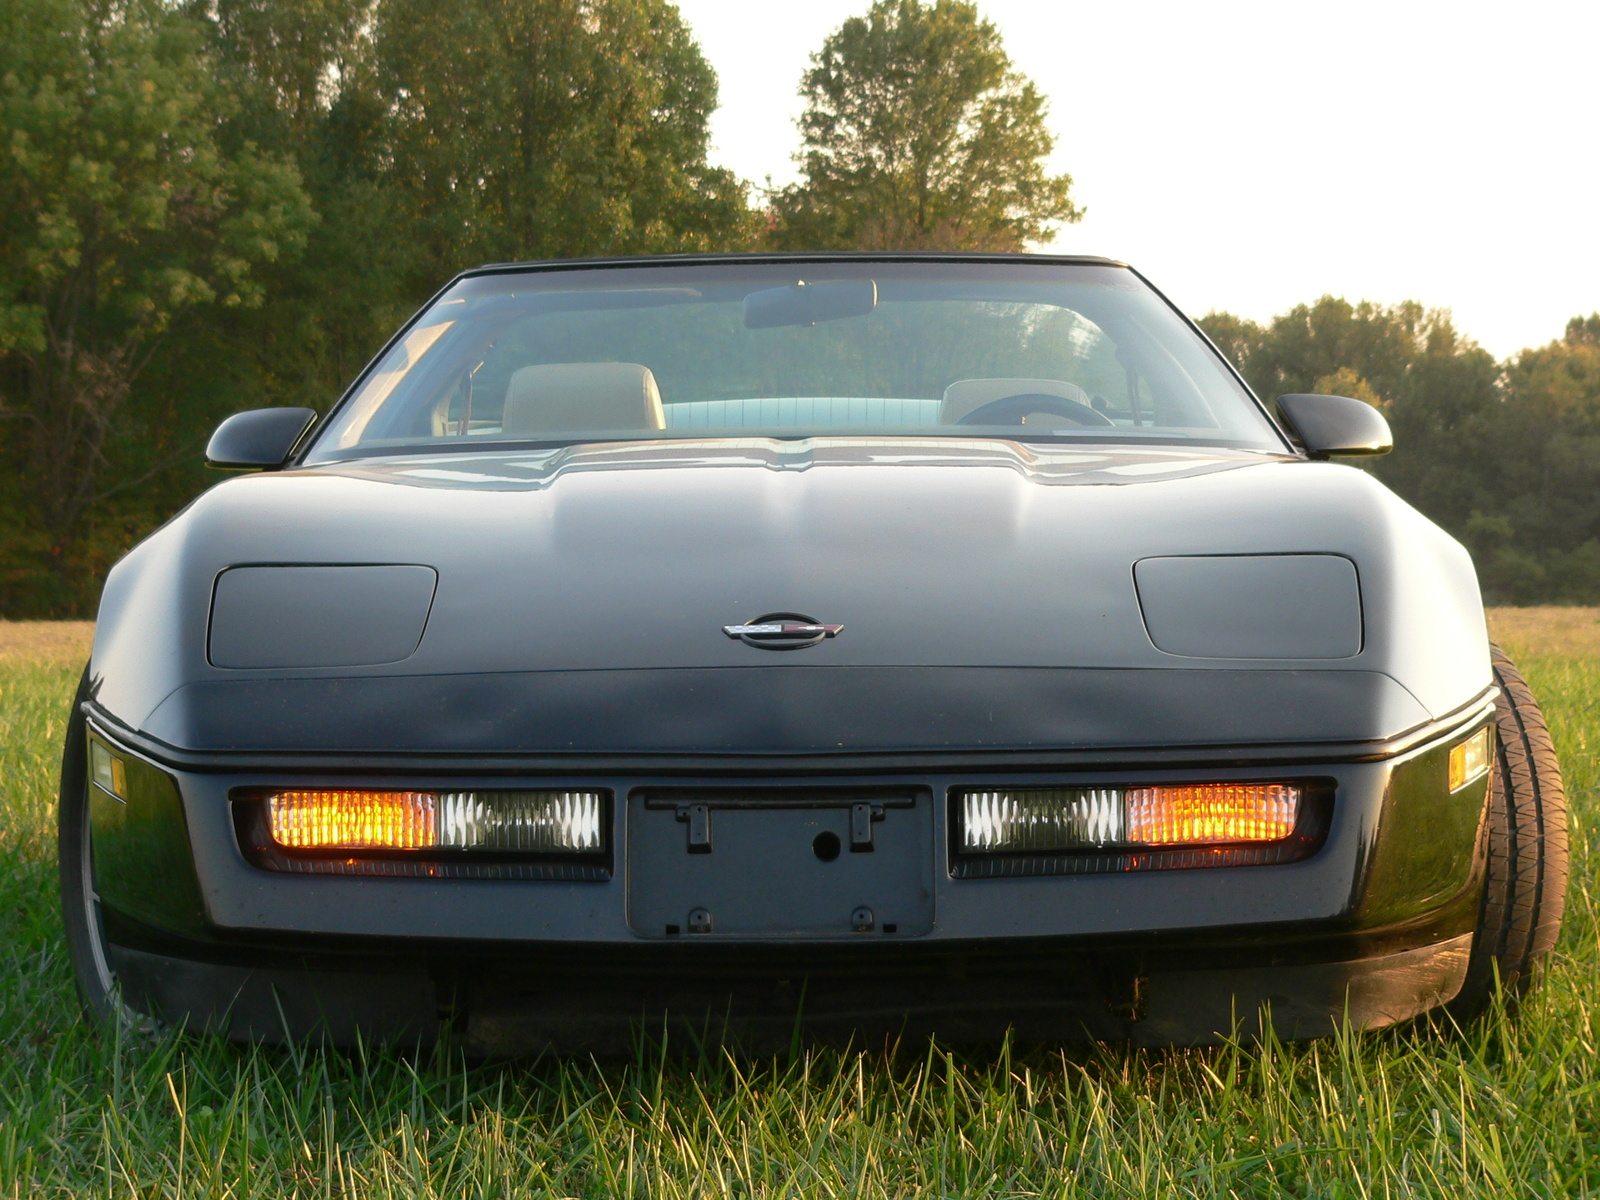 1984 Corvette